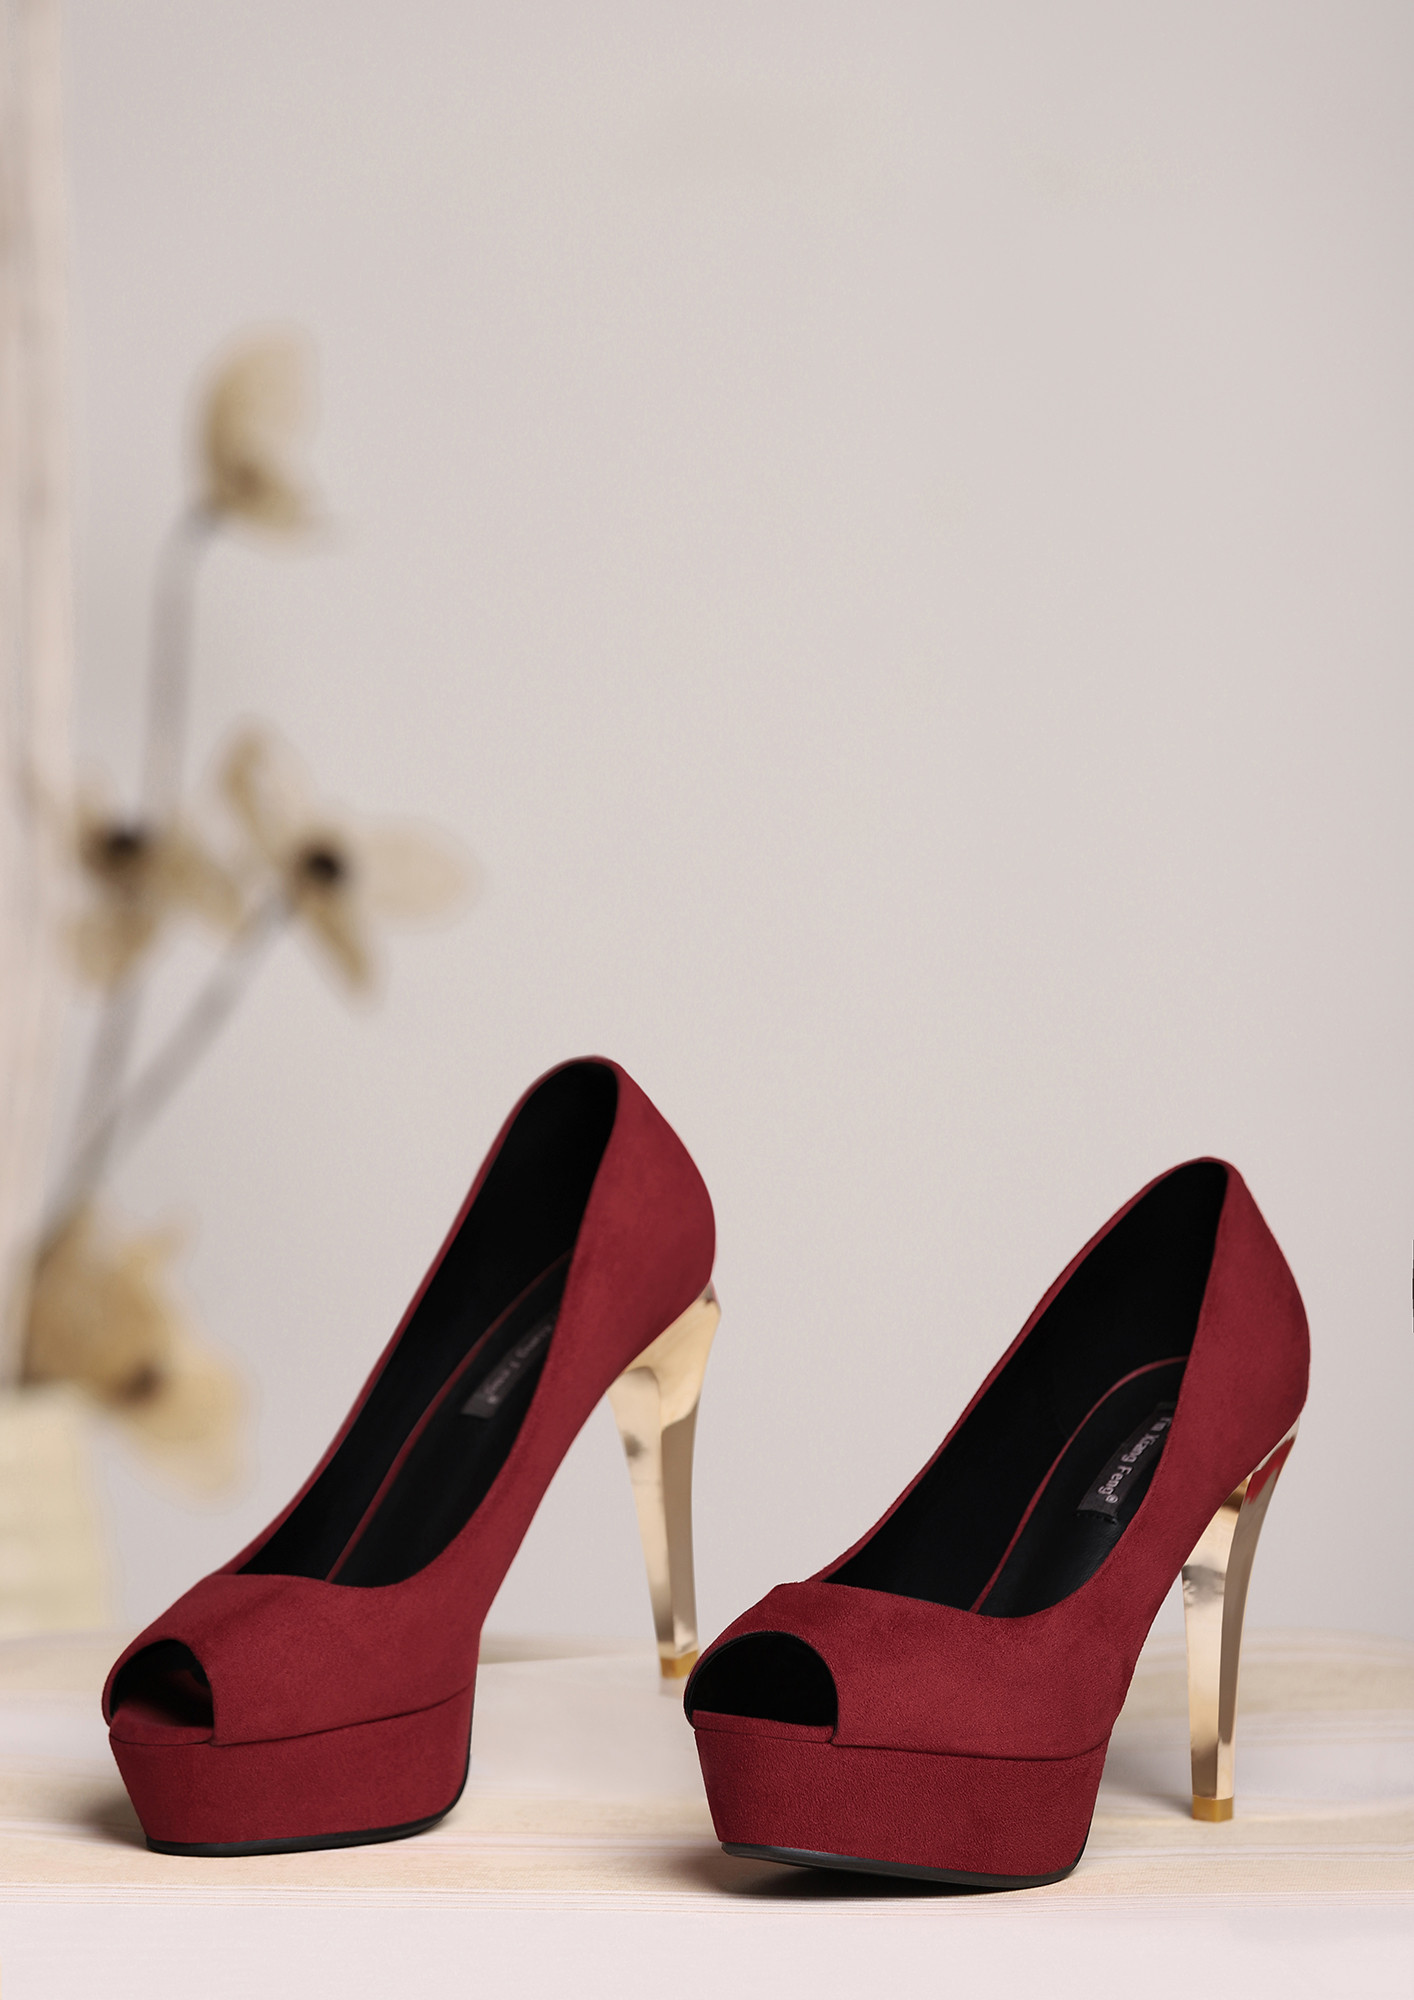 http://foxyeveseowork.blog.com/2015/03/30/buy-women-boots-online-acquire-new-trends/  | Women shoes online, Buy heels online, Women